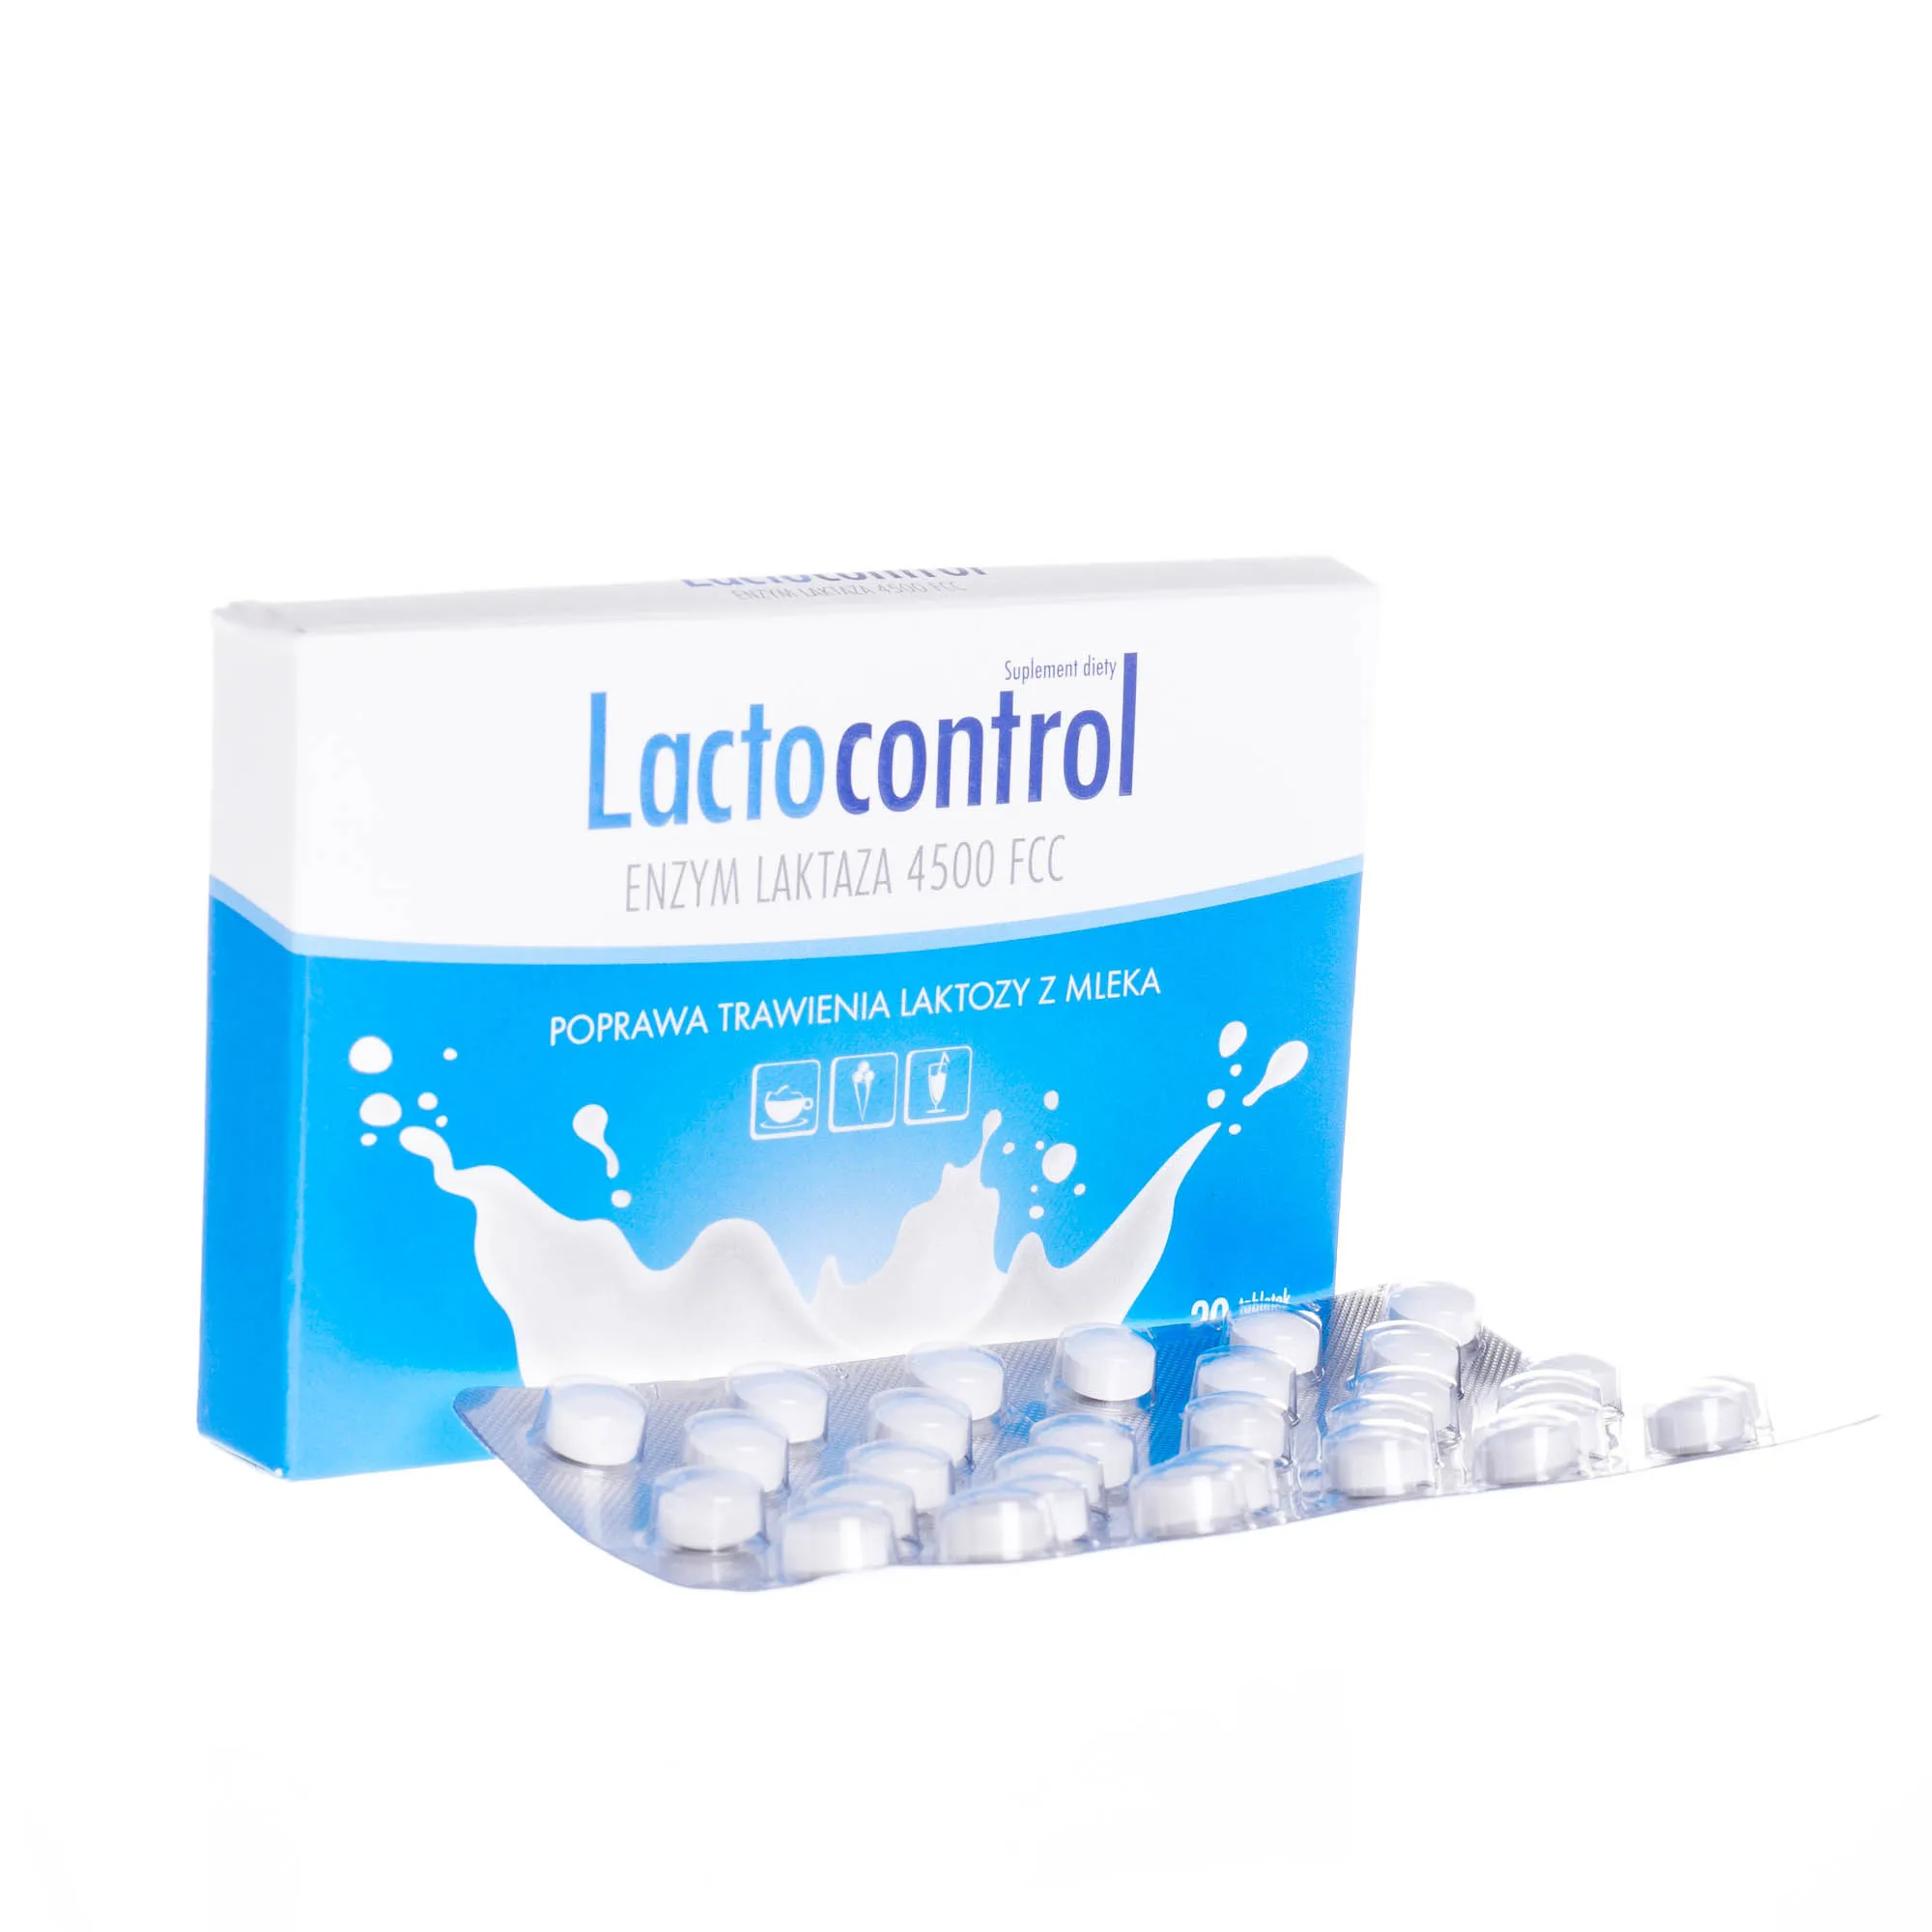 Lactocontrol, suplement diety poprawiający trawienie laktozy z mleka, 30 tabletek